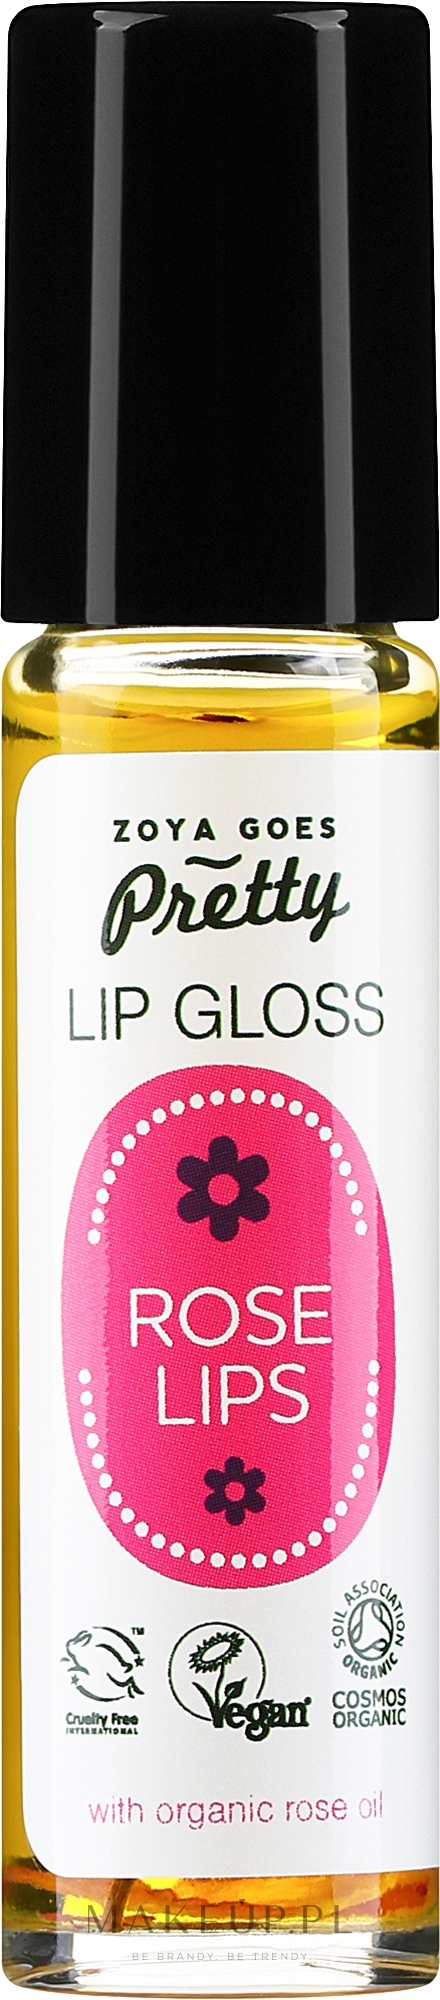 Różany błyszczyk do ust - Zoya Goes Lip Gloss Rose Lips  — Zdjęcie 10 ml